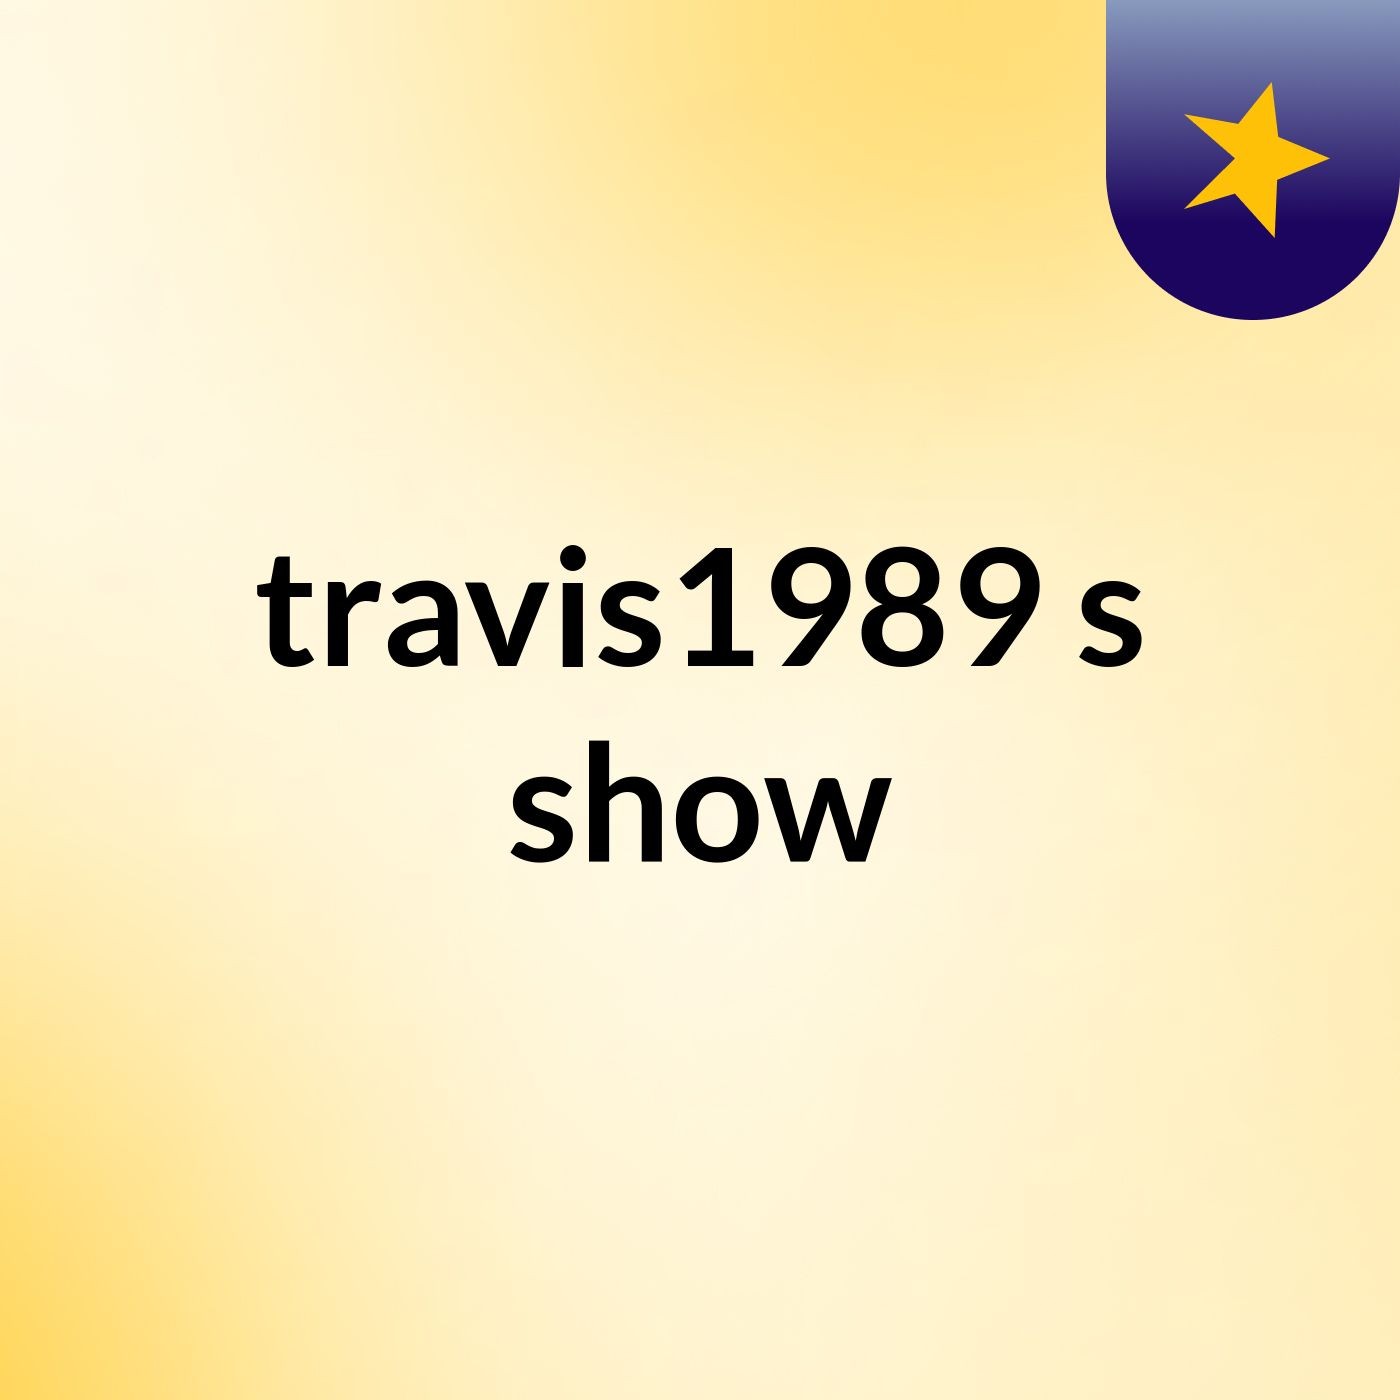 travis1989's show